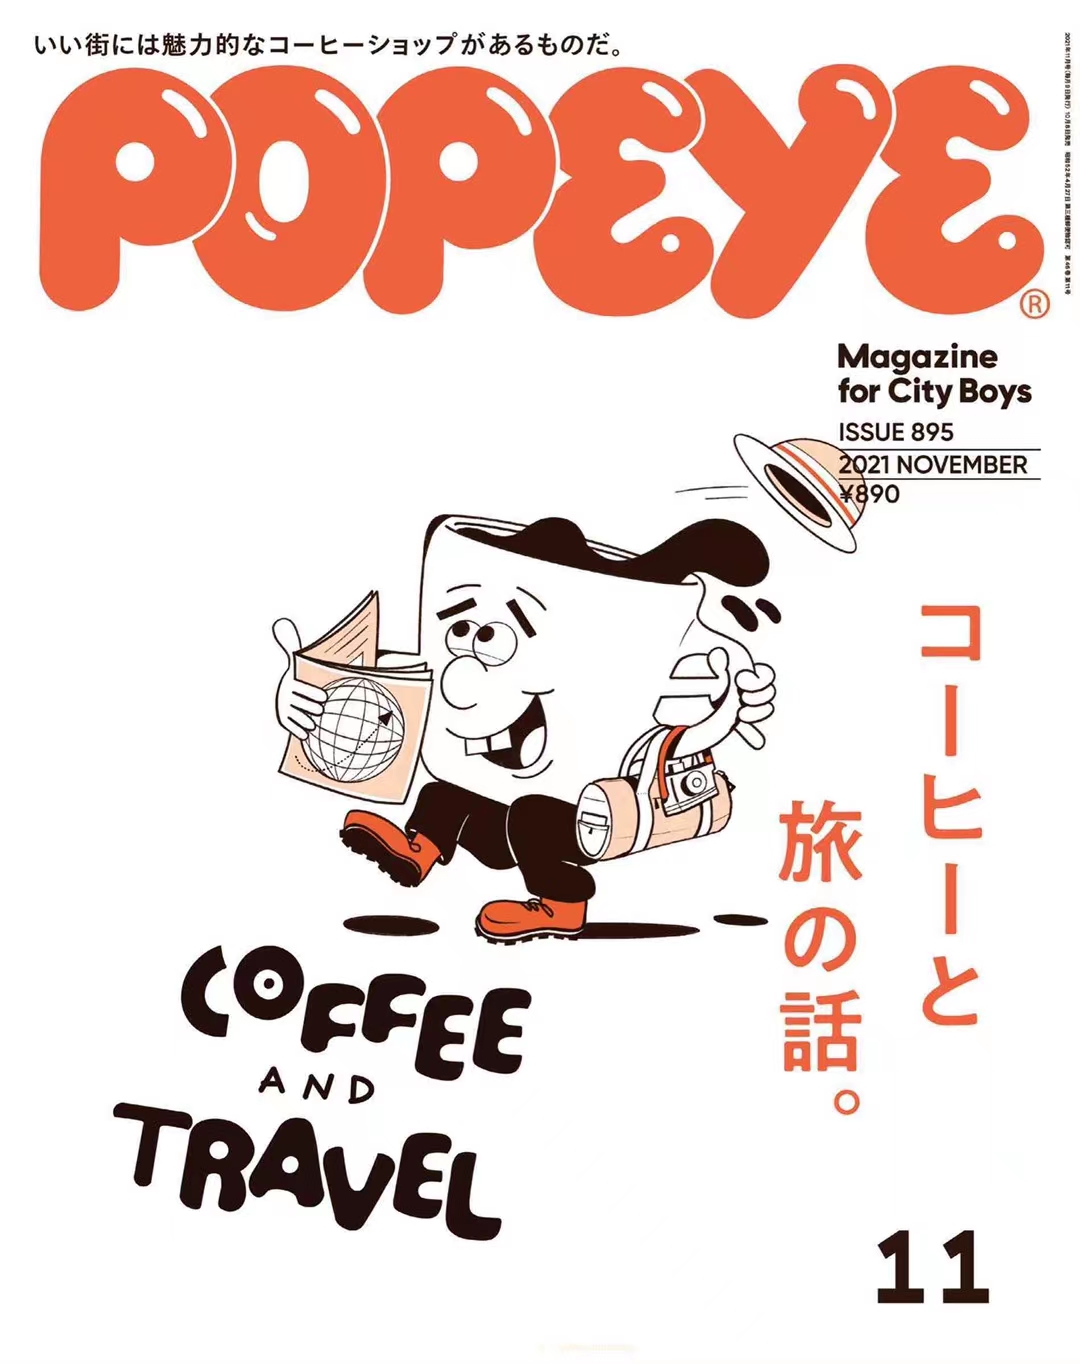 【瑜伽健身上新】【日本版】《Popeye》 2021年11月时尚男士服装搭配穿搭杂志